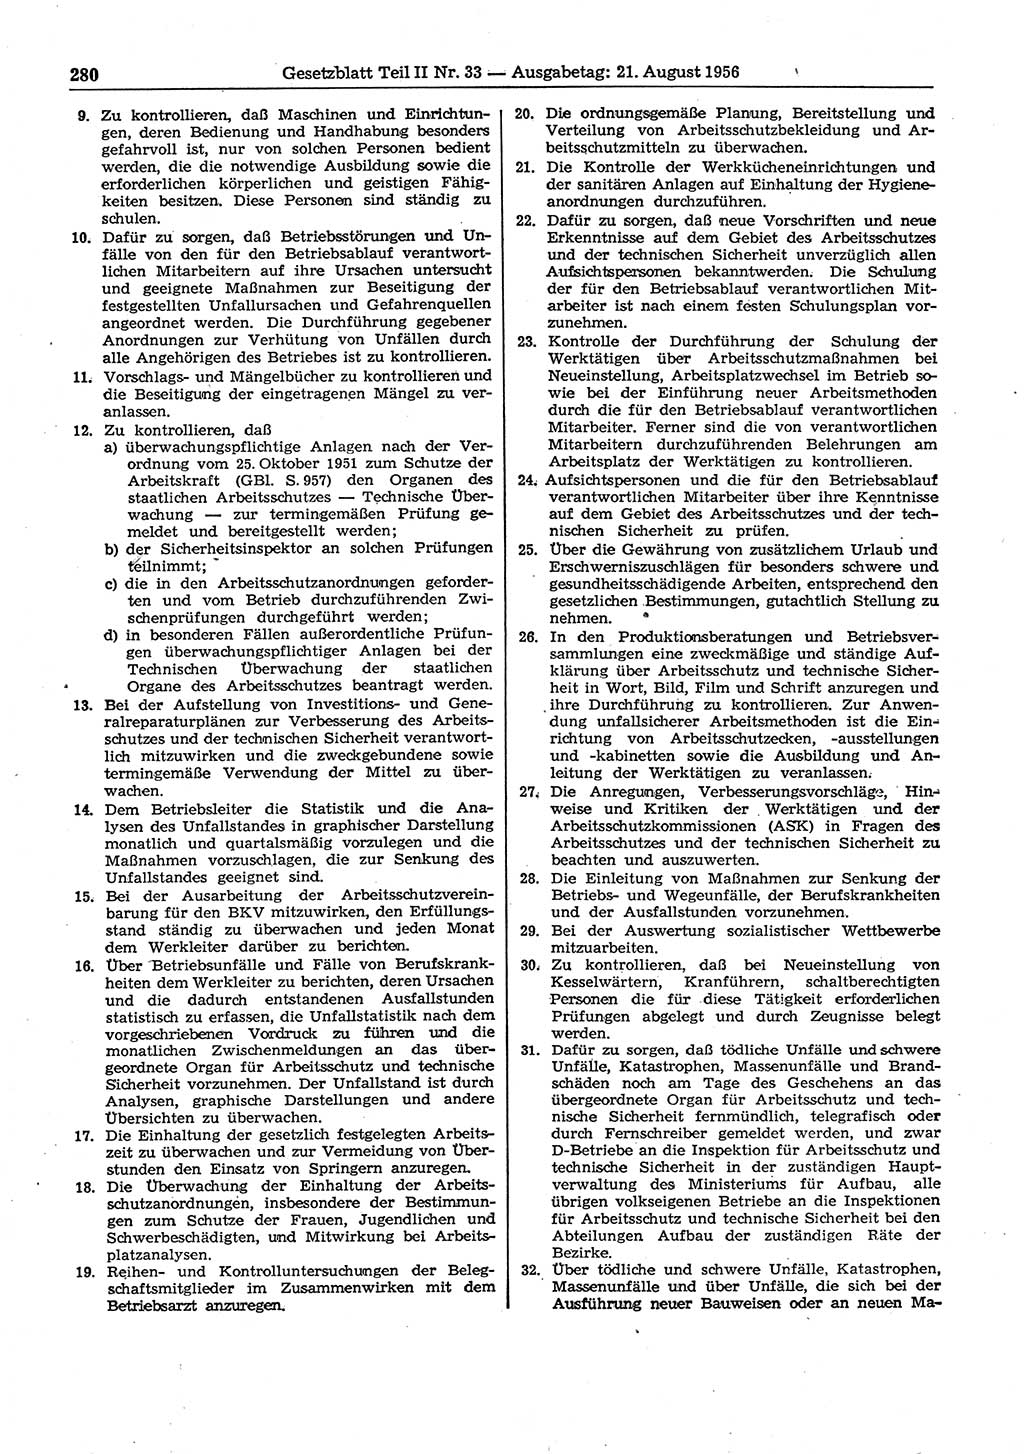 Gesetzblatt (GBl.) der Deutschen Demokratischen Republik (DDR) Teil ⅠⅠ 1956, Seite 280 (GBl. DDR ⅠⅠ 1956, S. 280)